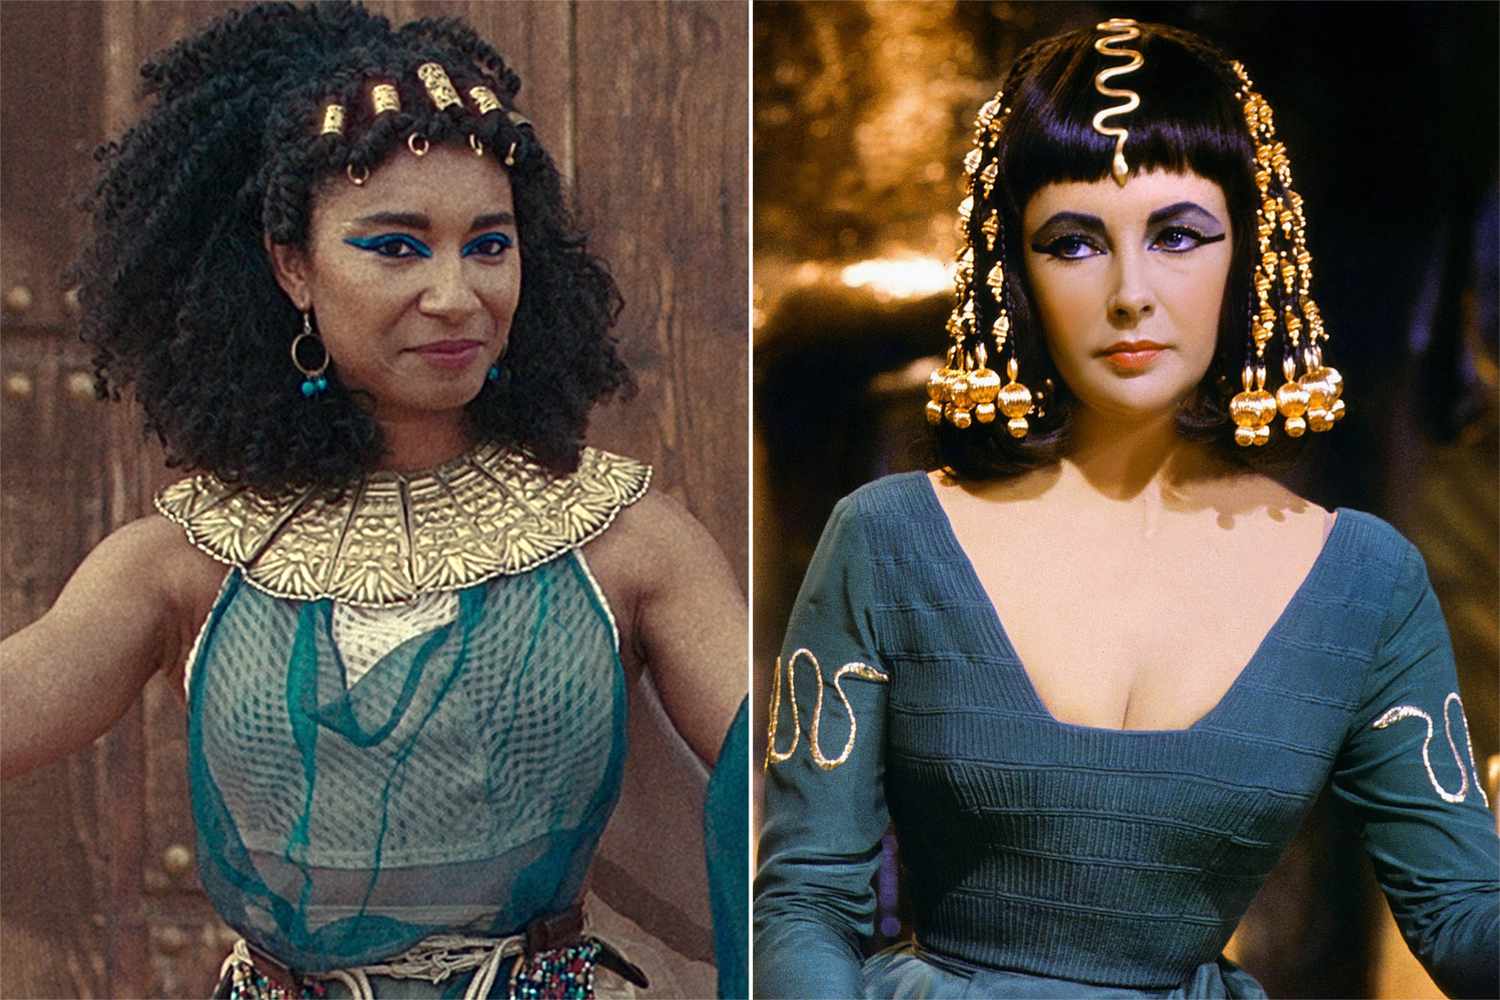 Queen Cleopatra' director responds to criticism of casting Black star | EW.com